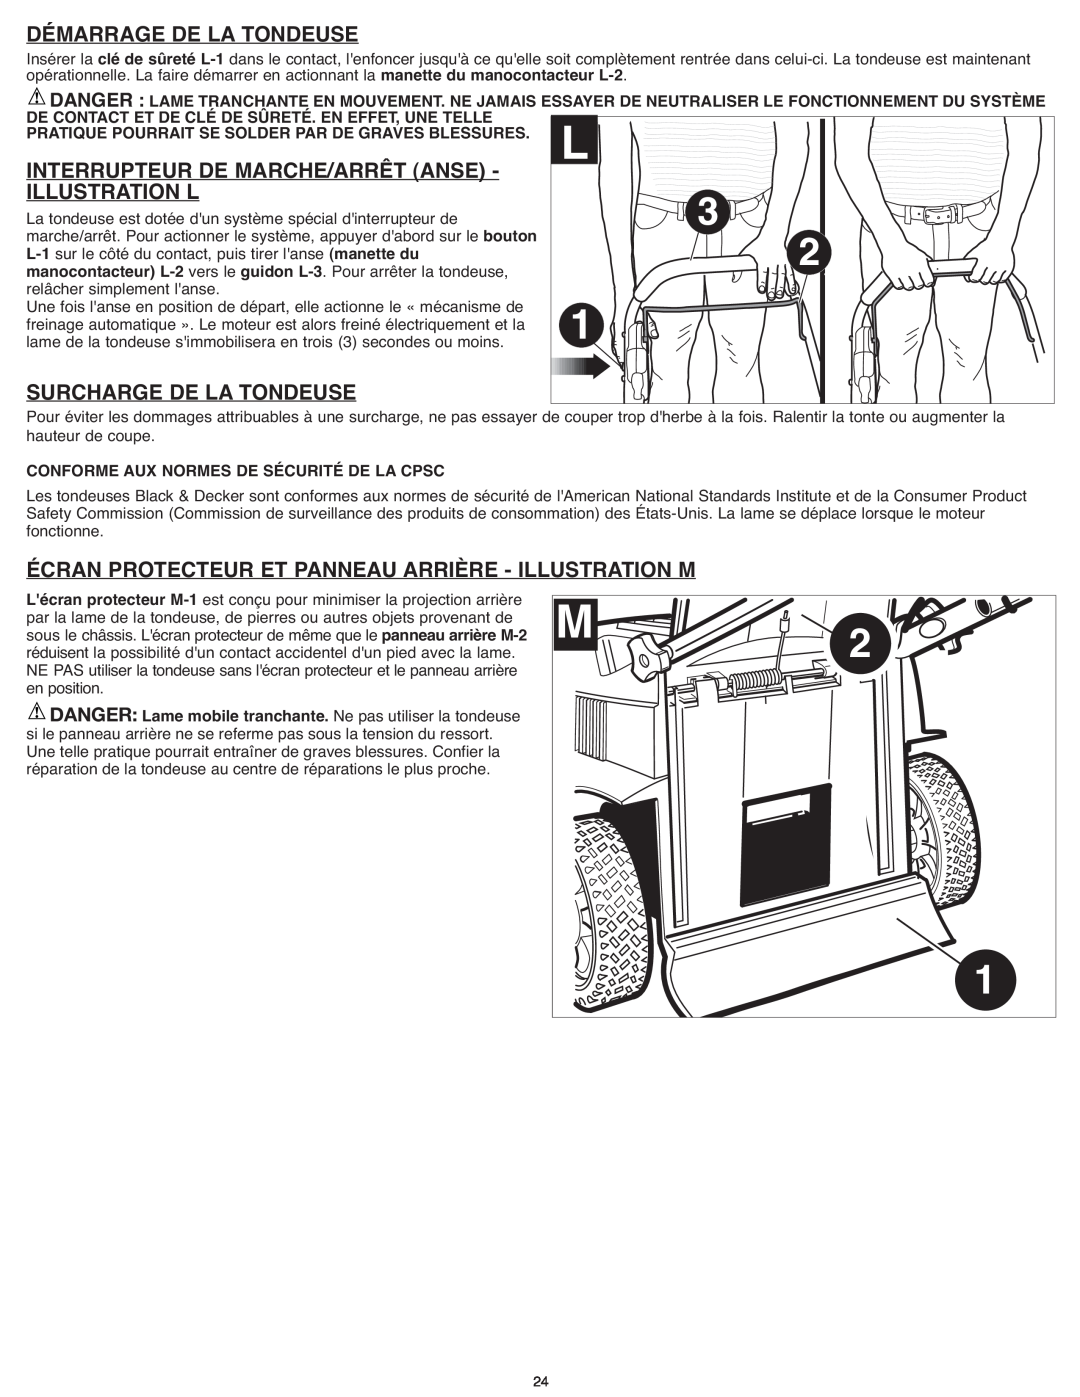 Black & Decker CM1936ZF2 instruction manual Démarrage De La Tondeuse, Interrupteur De Marche/Arrêt Anse, Illustration L 